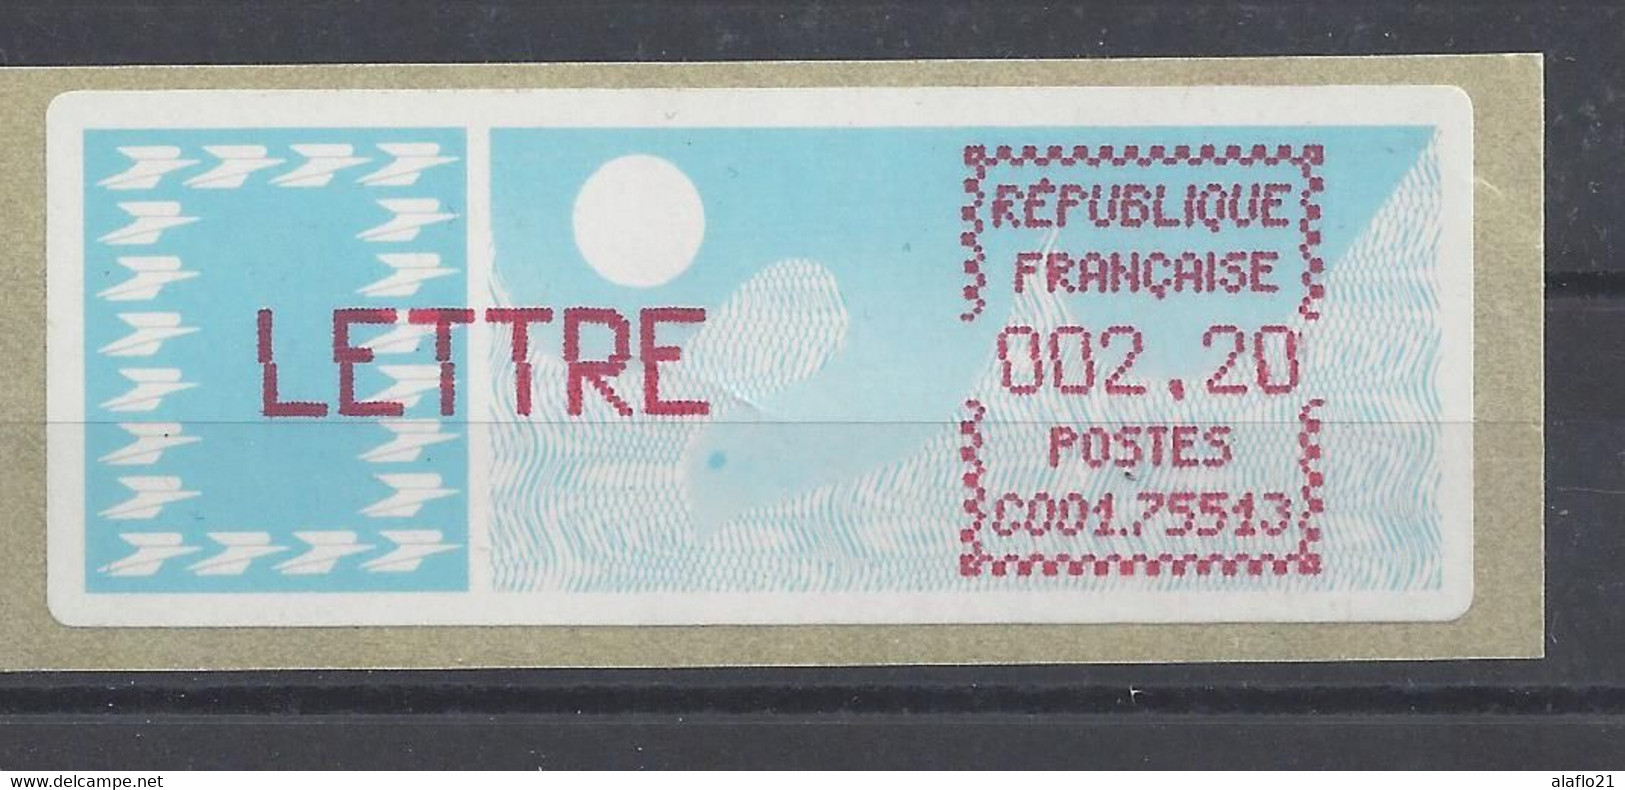 TIMBRE De DISTRIBUTEUR LISA (ATM) N° 95 - 75513 PARIS - 1985 « Carrier » Papier